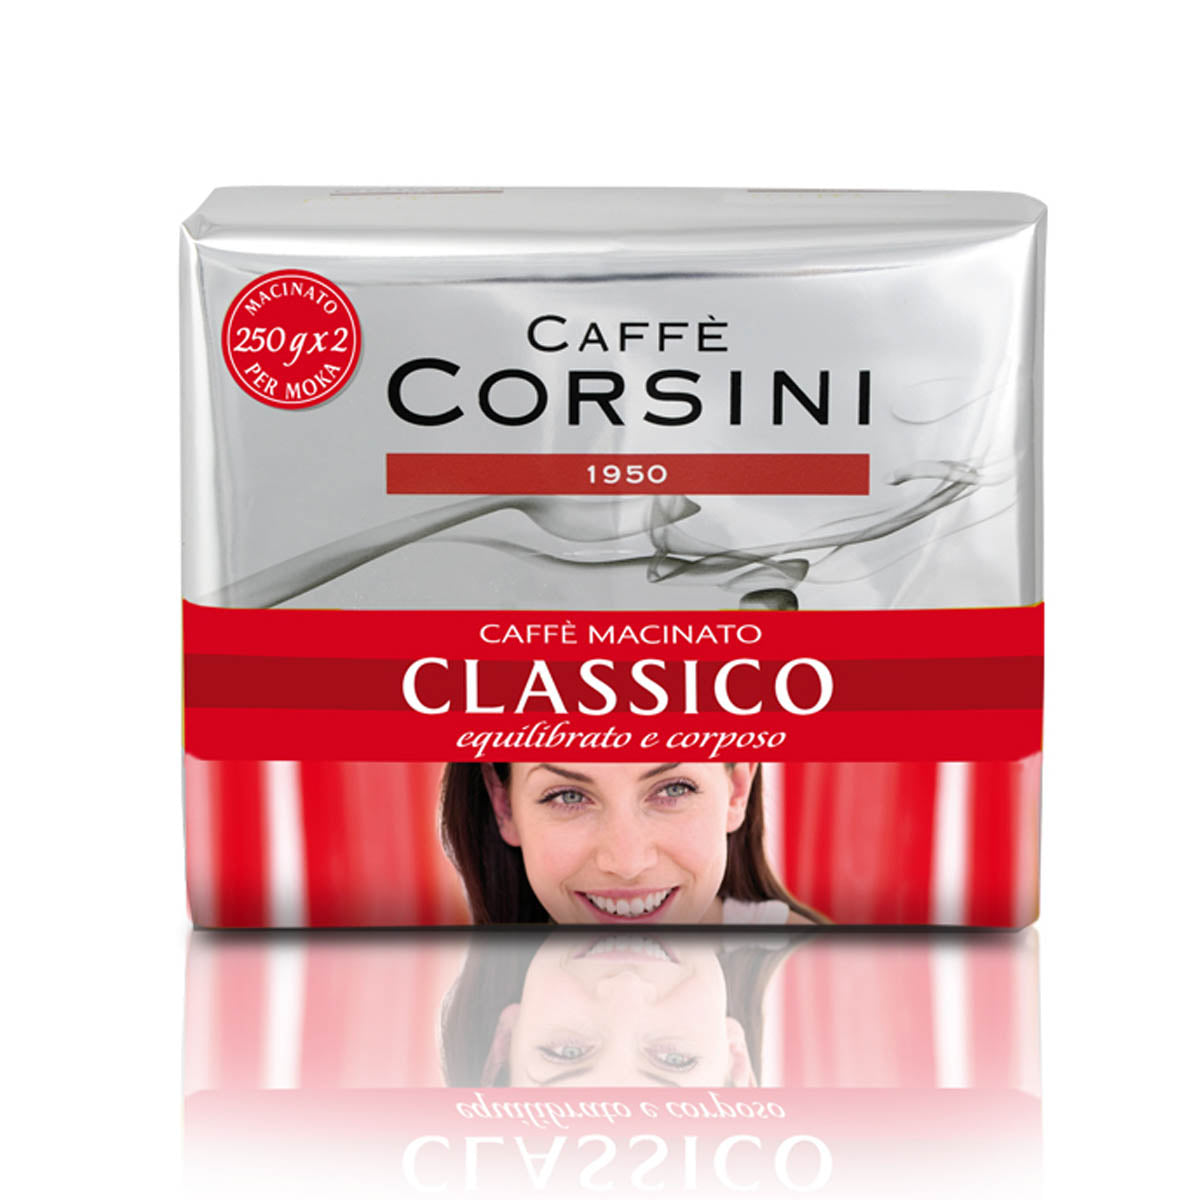 Caffè macinato dal gusto classico | Confezione contenente 2 pacchetti da 250g l'uno